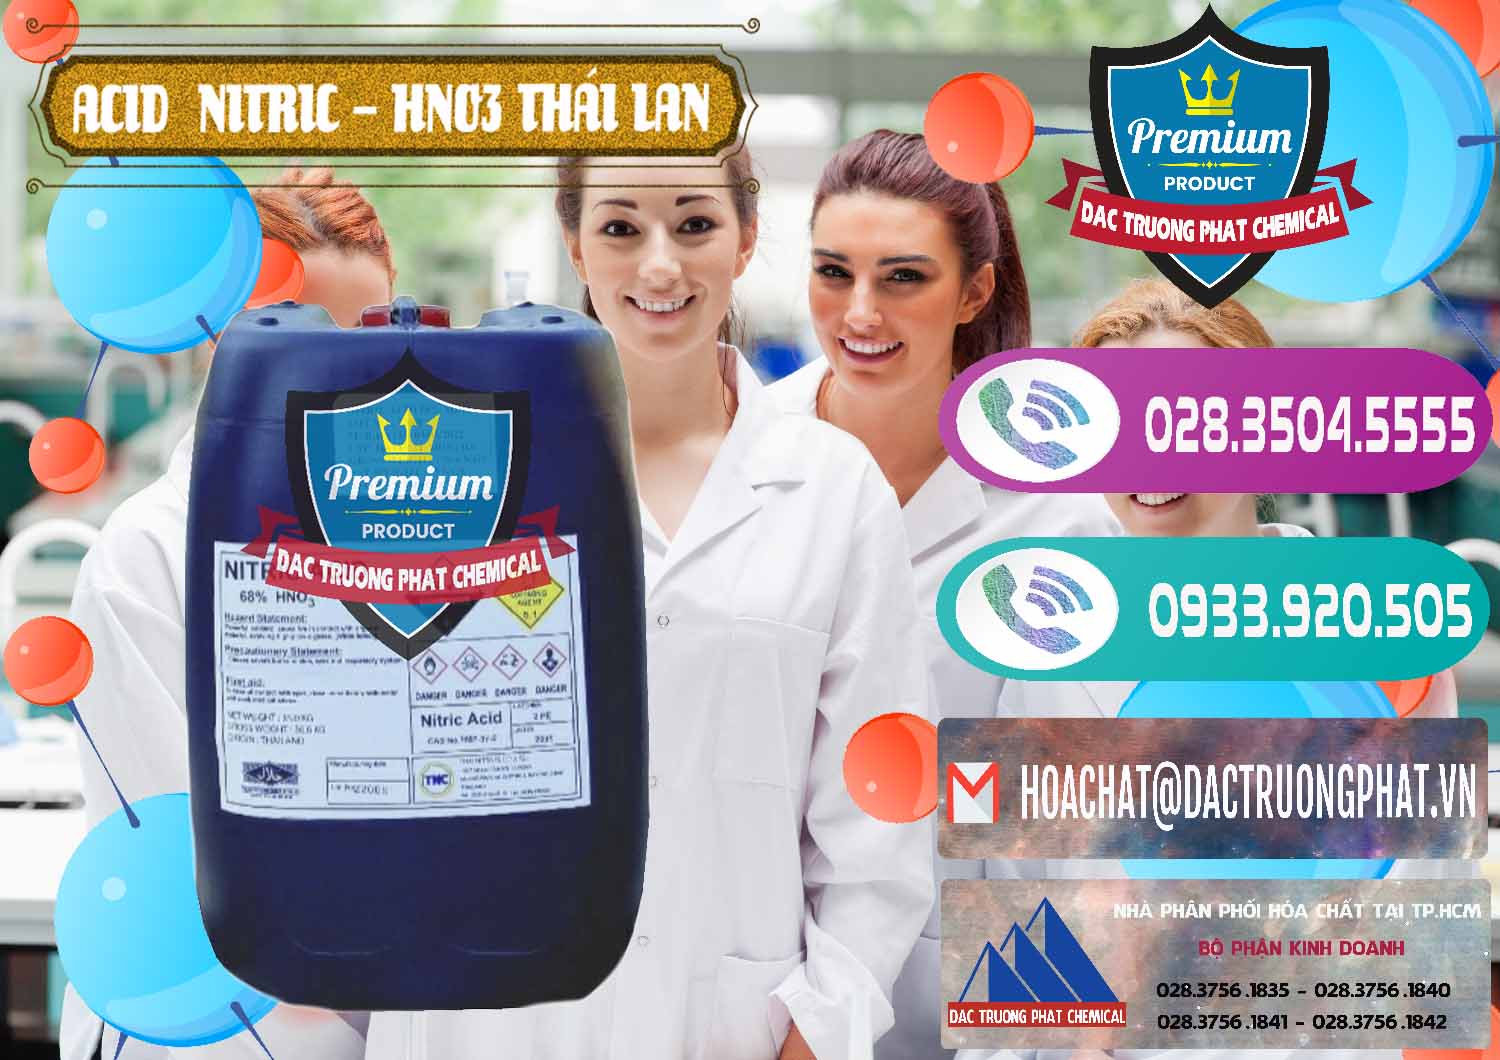 Cty chuyên cung cấp _ bán Acid Nitric – Axit Nitric HNO3 Thái Lan Thailand - 0344 - Cty cung ứng & phân phối hóa chất tại TP.HCM - hoachatxulynuoc.com